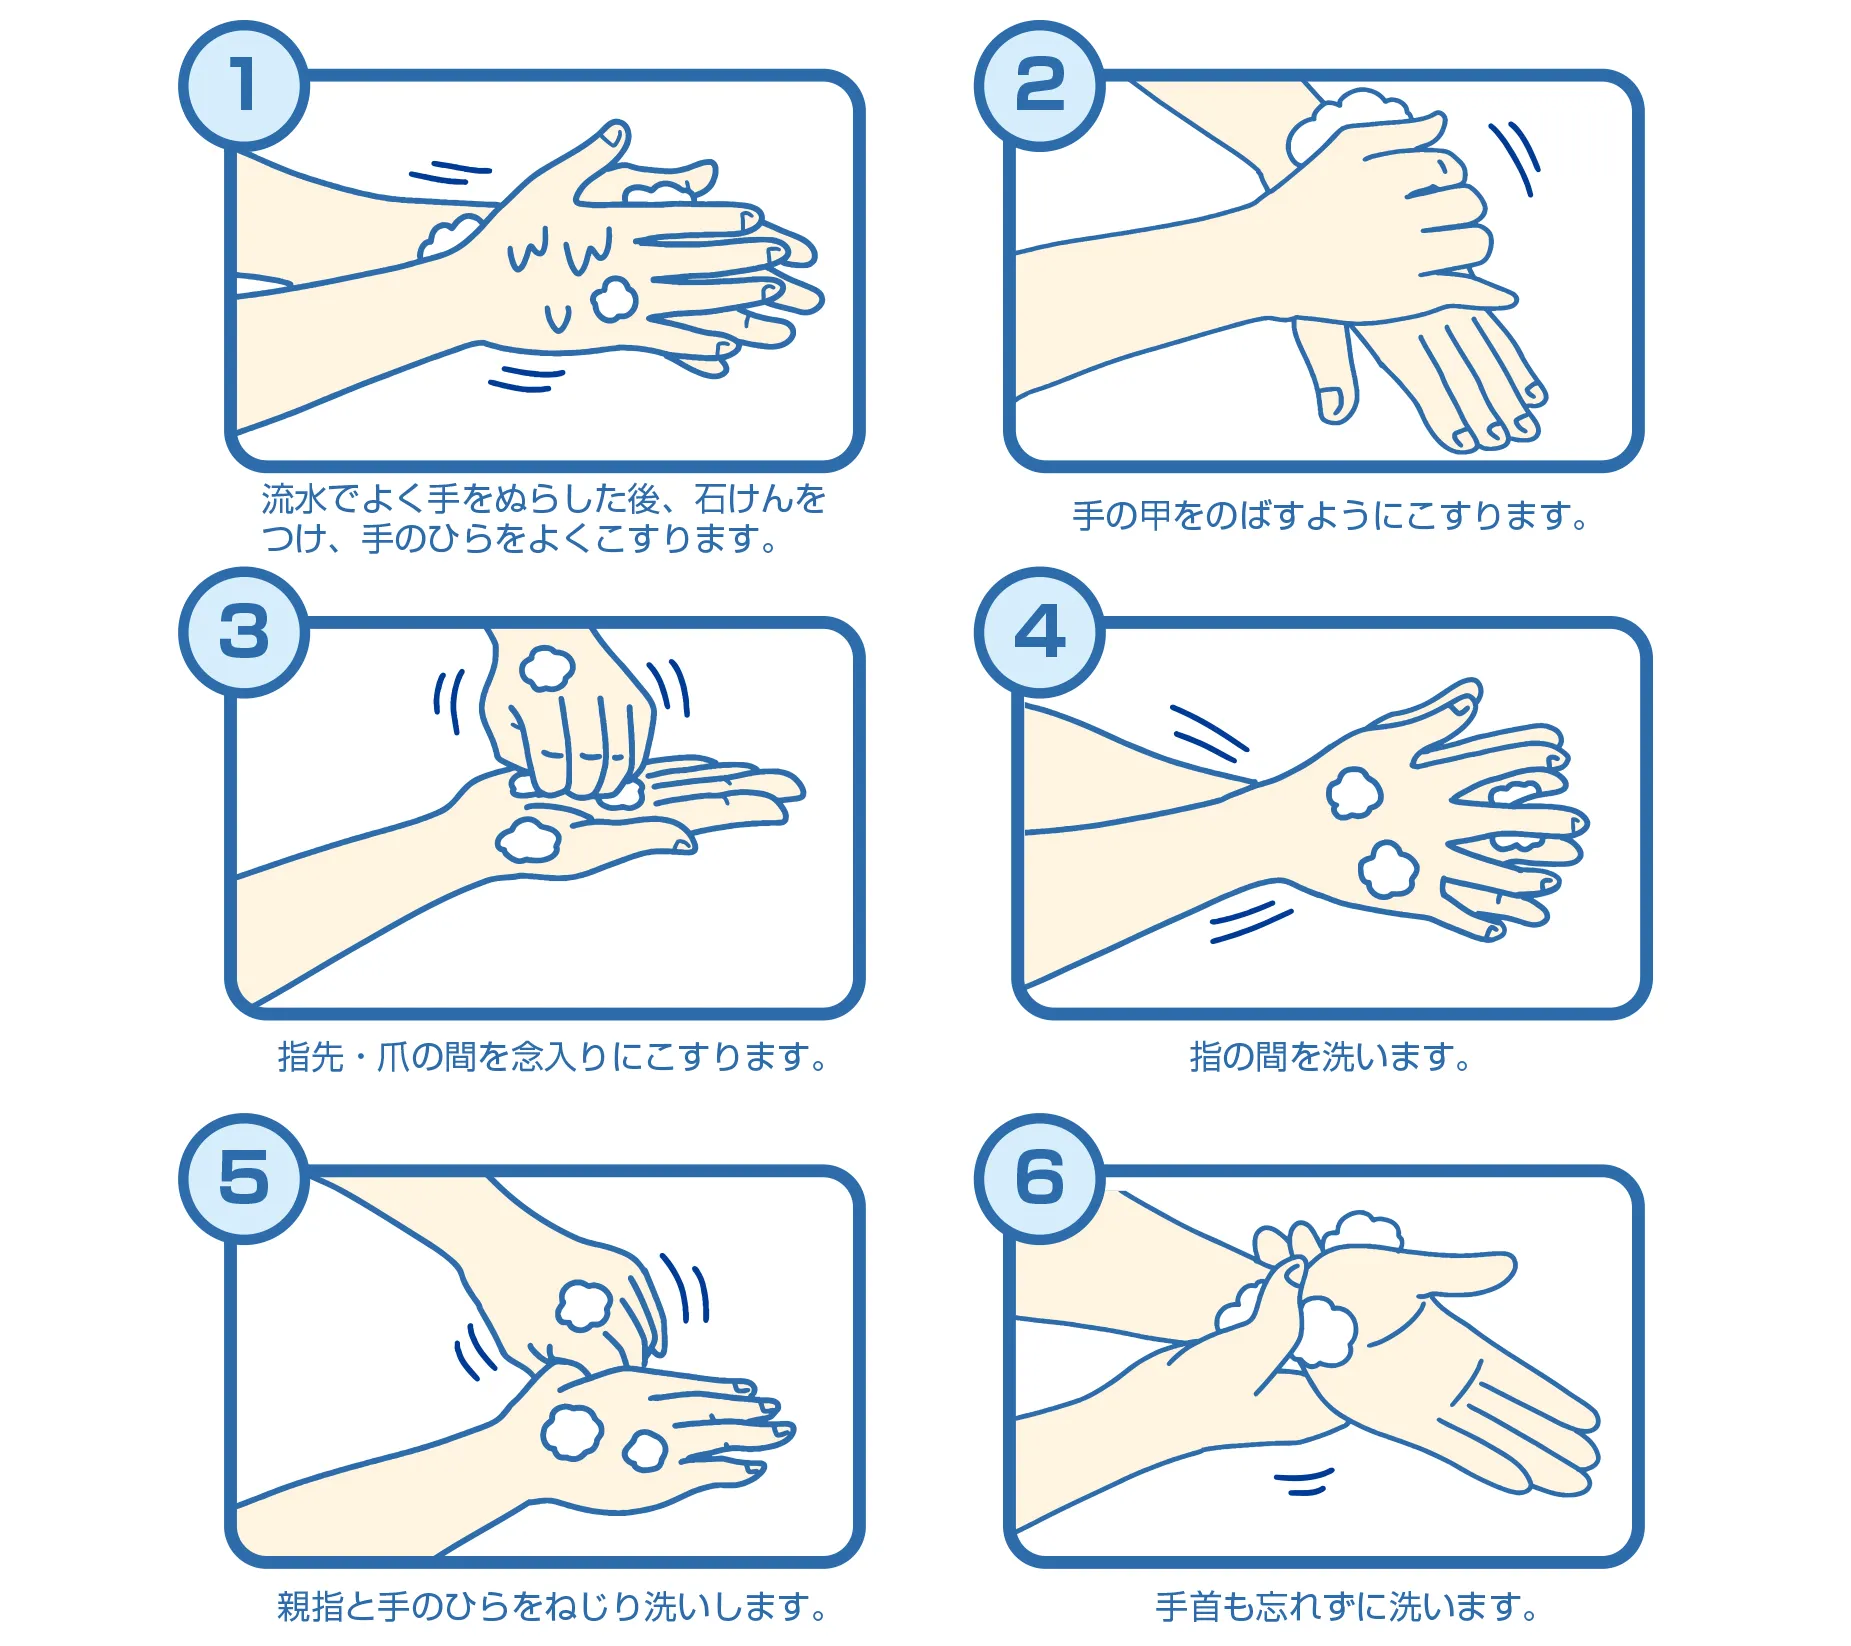 手洗いの順番。（1）流水でよく手をぬらした後、石けんをつけ、手のひらをよくこすります。（２）手の甲をのばすようにこすります。（３）指先・爪の間を念入りにこすります。（４）指の間を洗います。 （５）親指と手のひらをねじり洗いします。 （６）手首も忘れずに洗います。